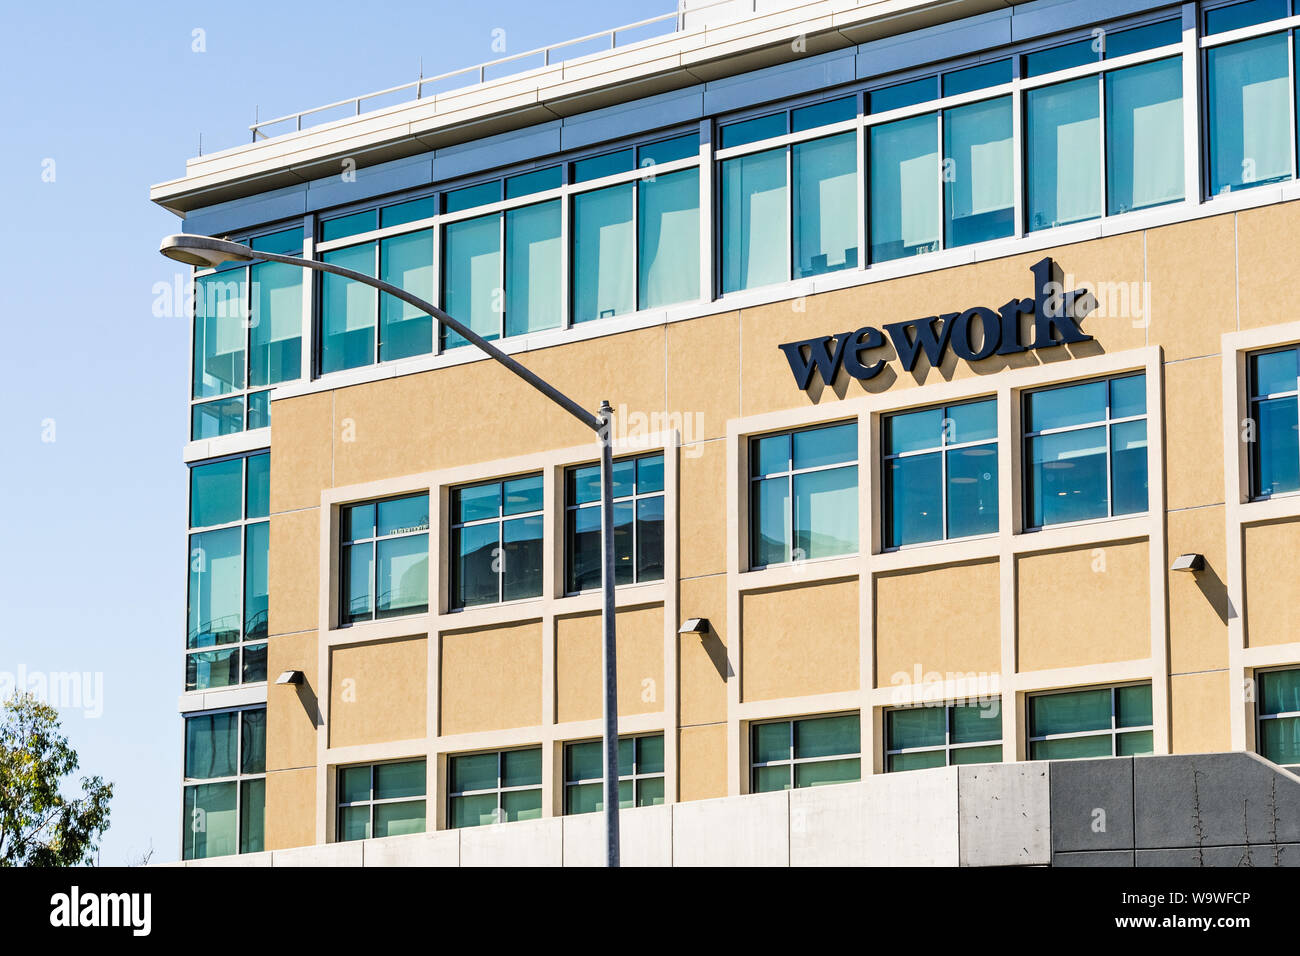 August 14, 2019 San Mateo/CA/USA - WeWork Bürogebäude in Silicon Valley; WeWork ist eine amerikanische Firma, freigegebene Arbeitsbereiche bietet Stockfoto